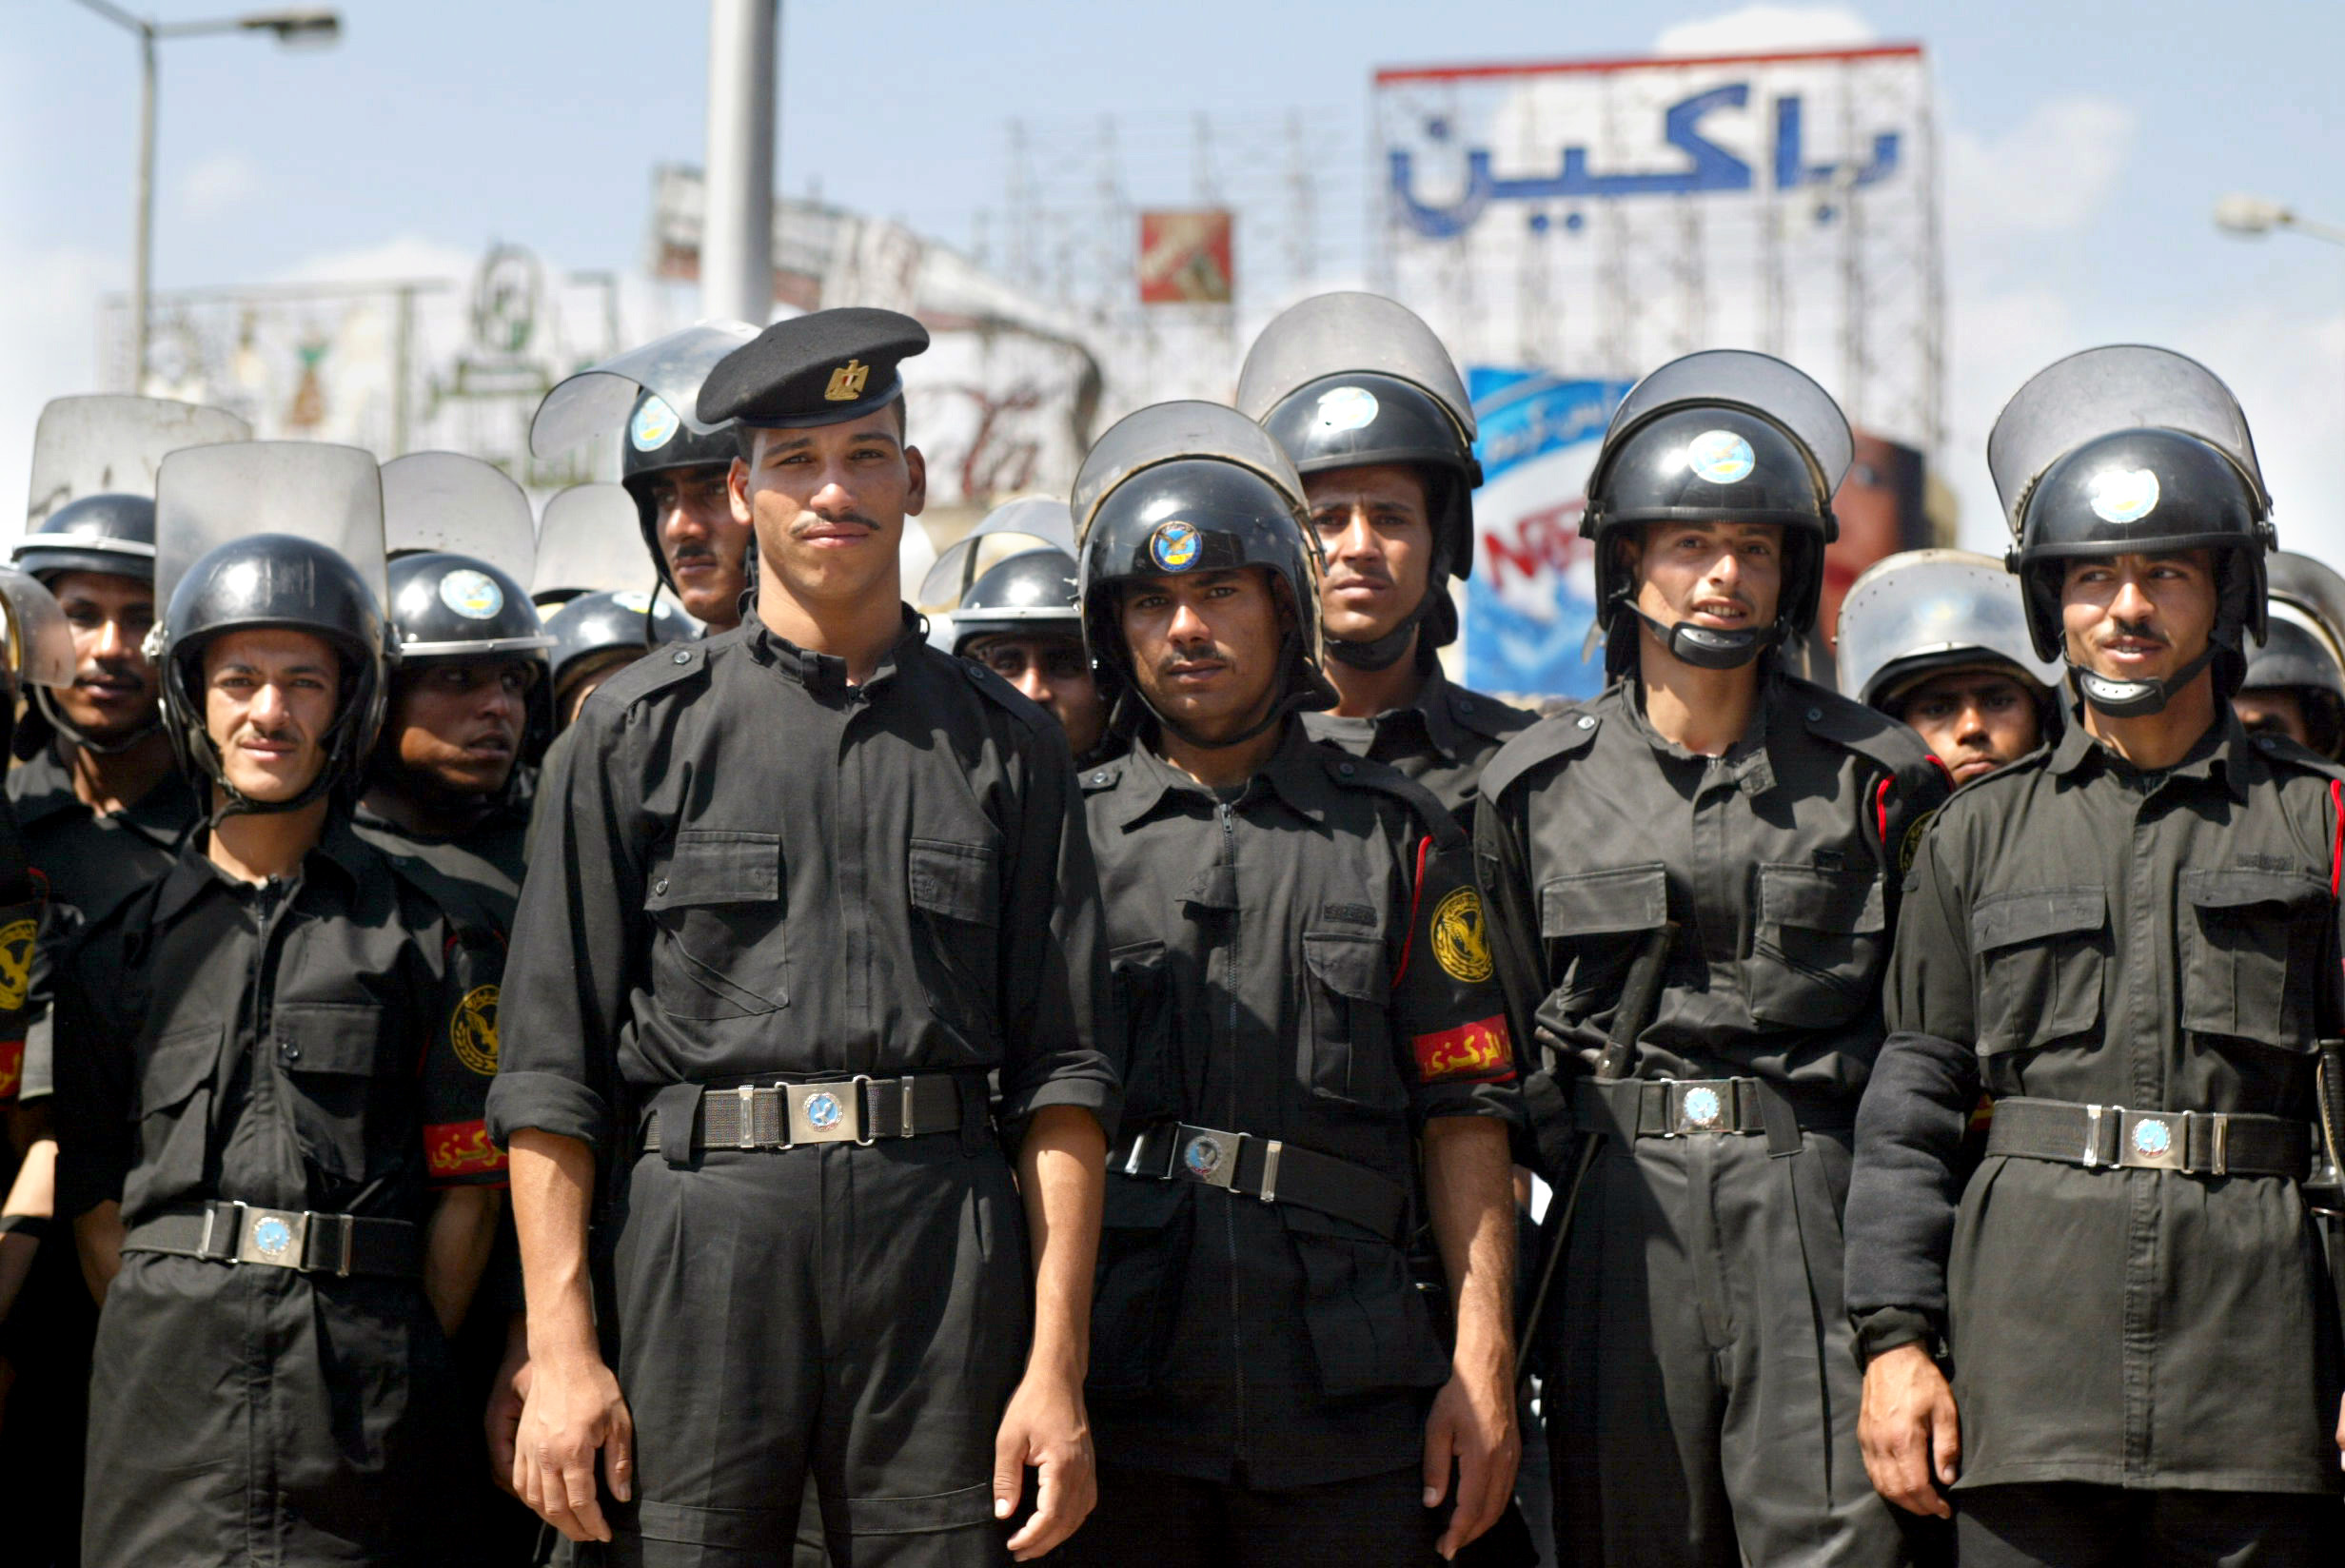 La policía egipcia utiliza Grindr para perseguir homosexuales